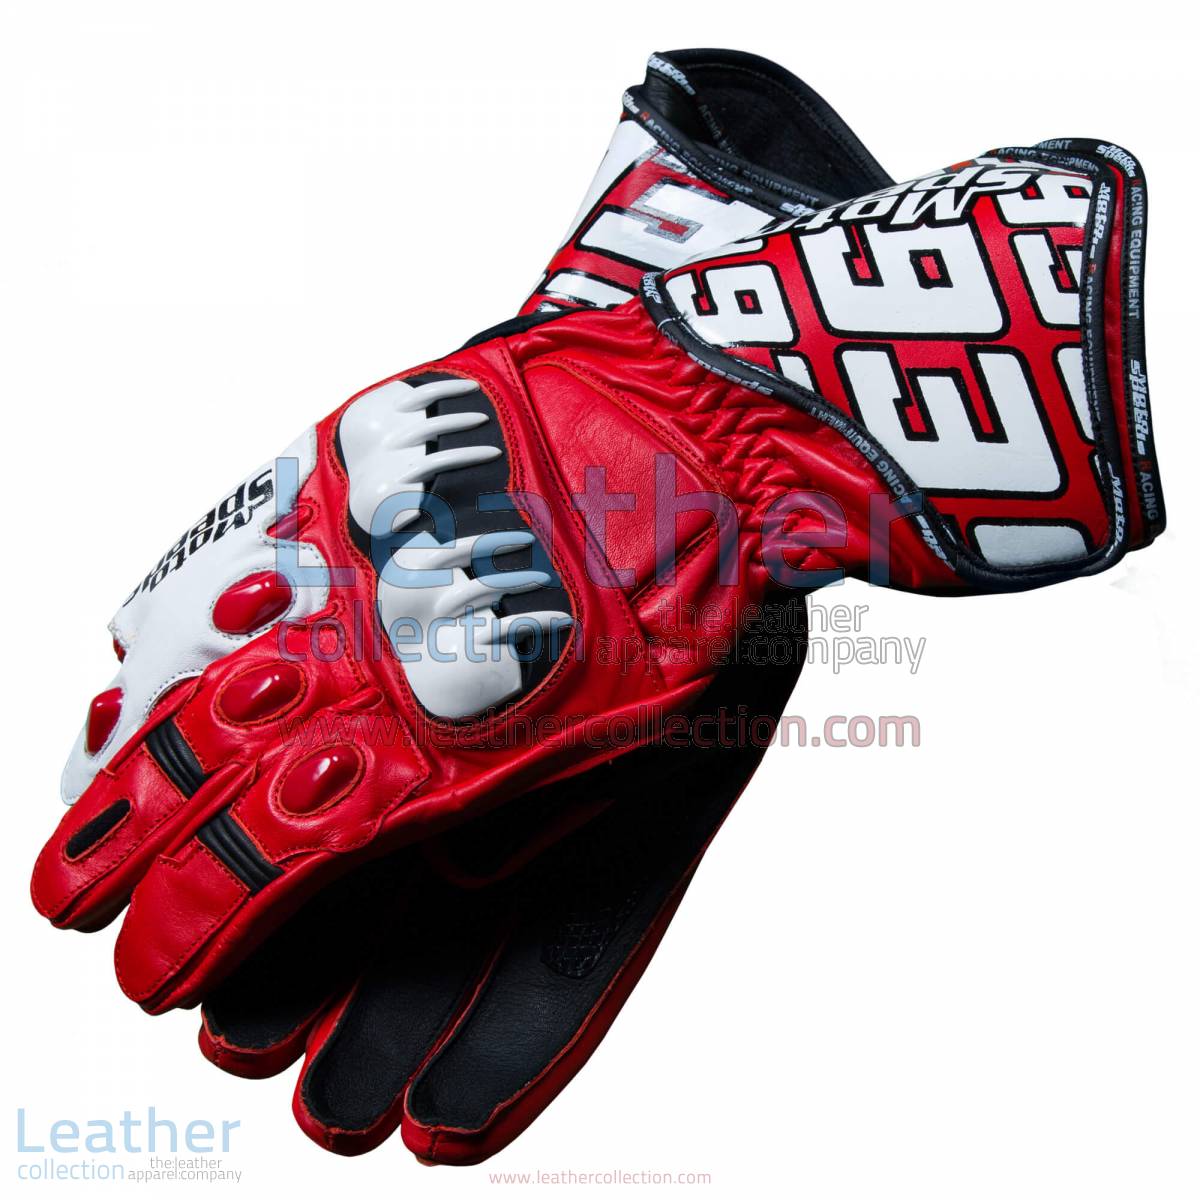 Honda Repsol 2013 Marquez Leather Gloves | marquez